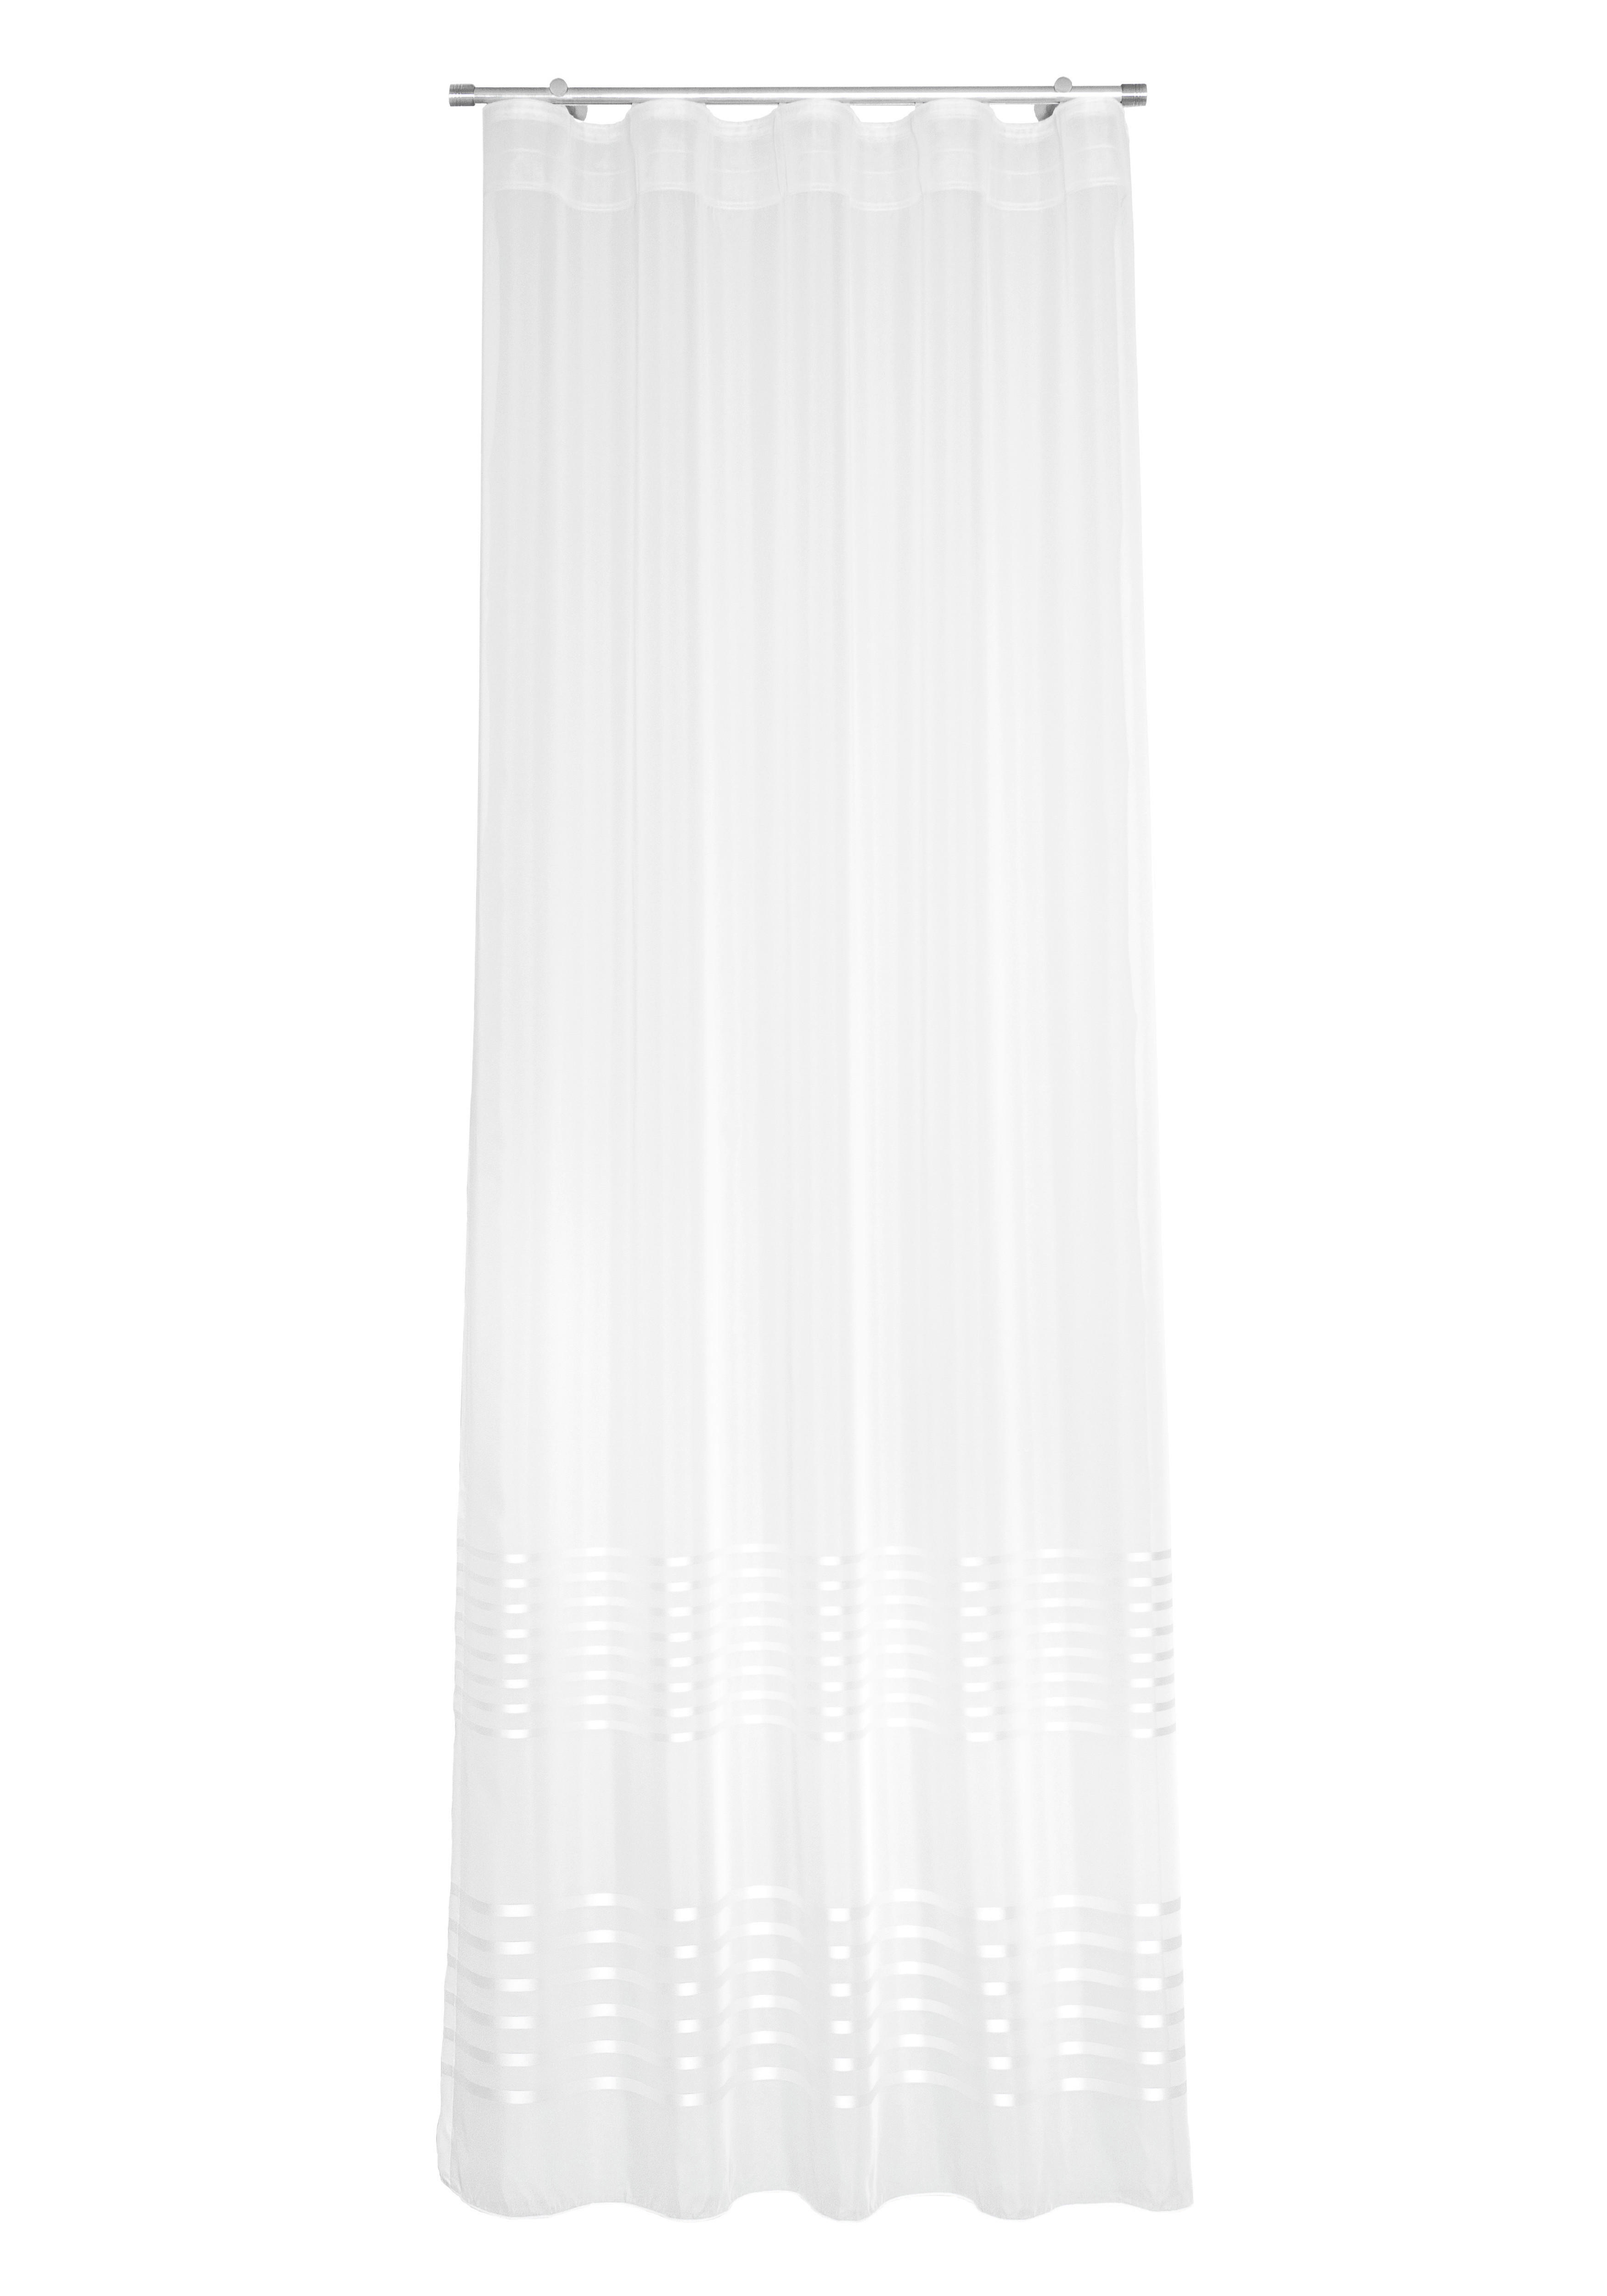 KÉSZFÜGGÖNY  - Fehér, Basics, Textil (140/245cm)